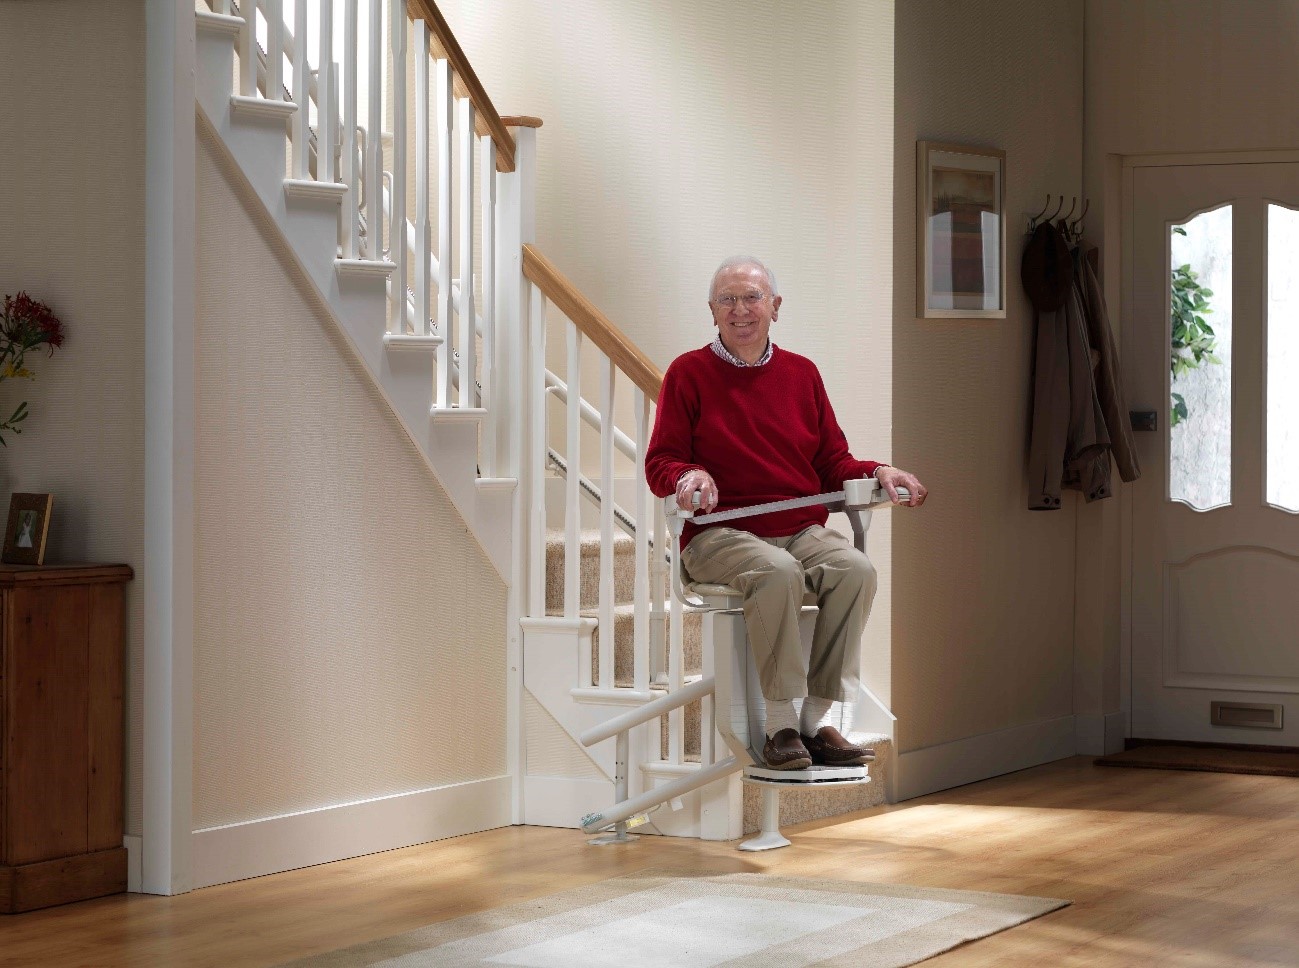 Enfermedad de Parkinson y prevención de caídas: silla salvaescaleras